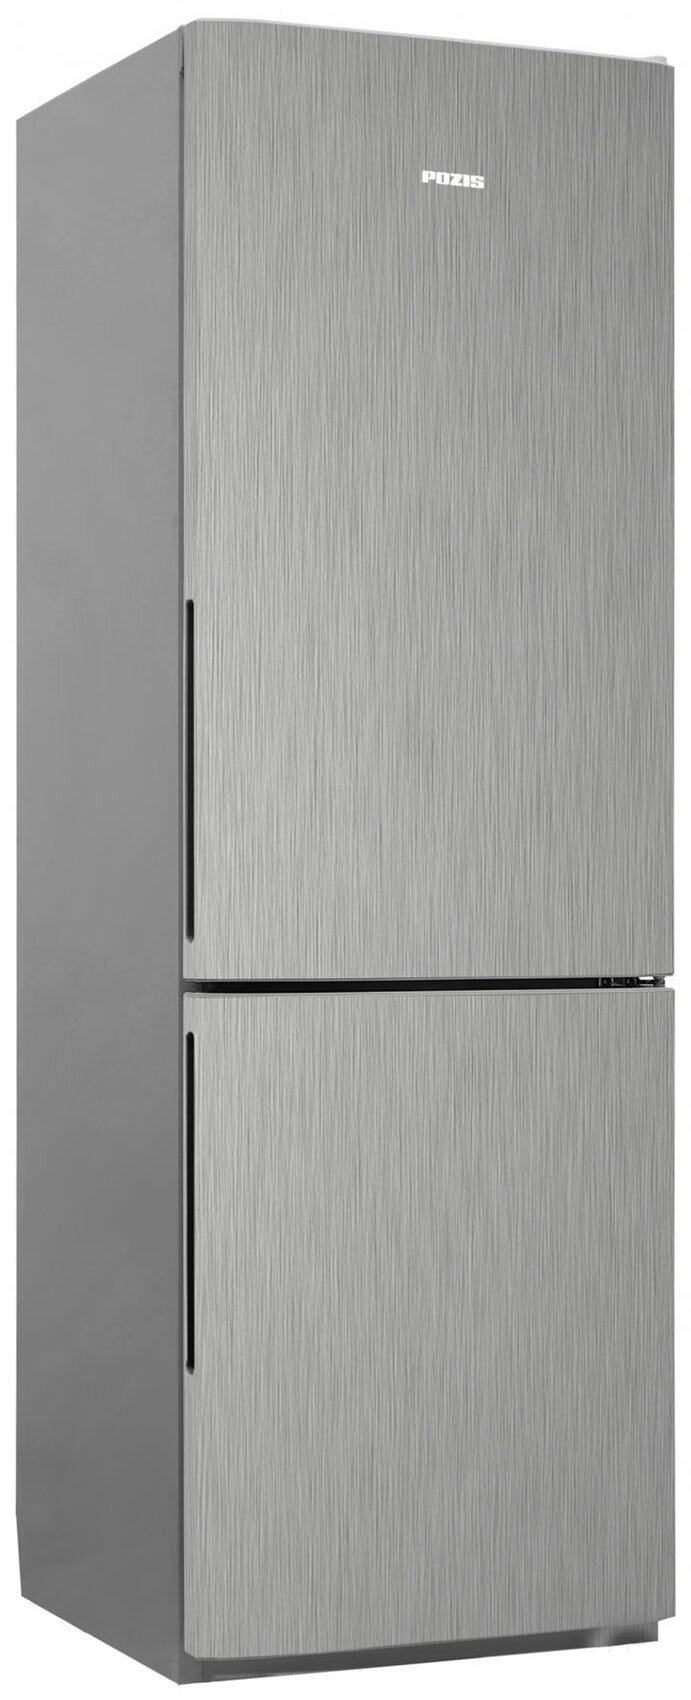 Двухкамерный холодильник Позис RK FNF-170 серебристый металлопласт ручки вертикальные